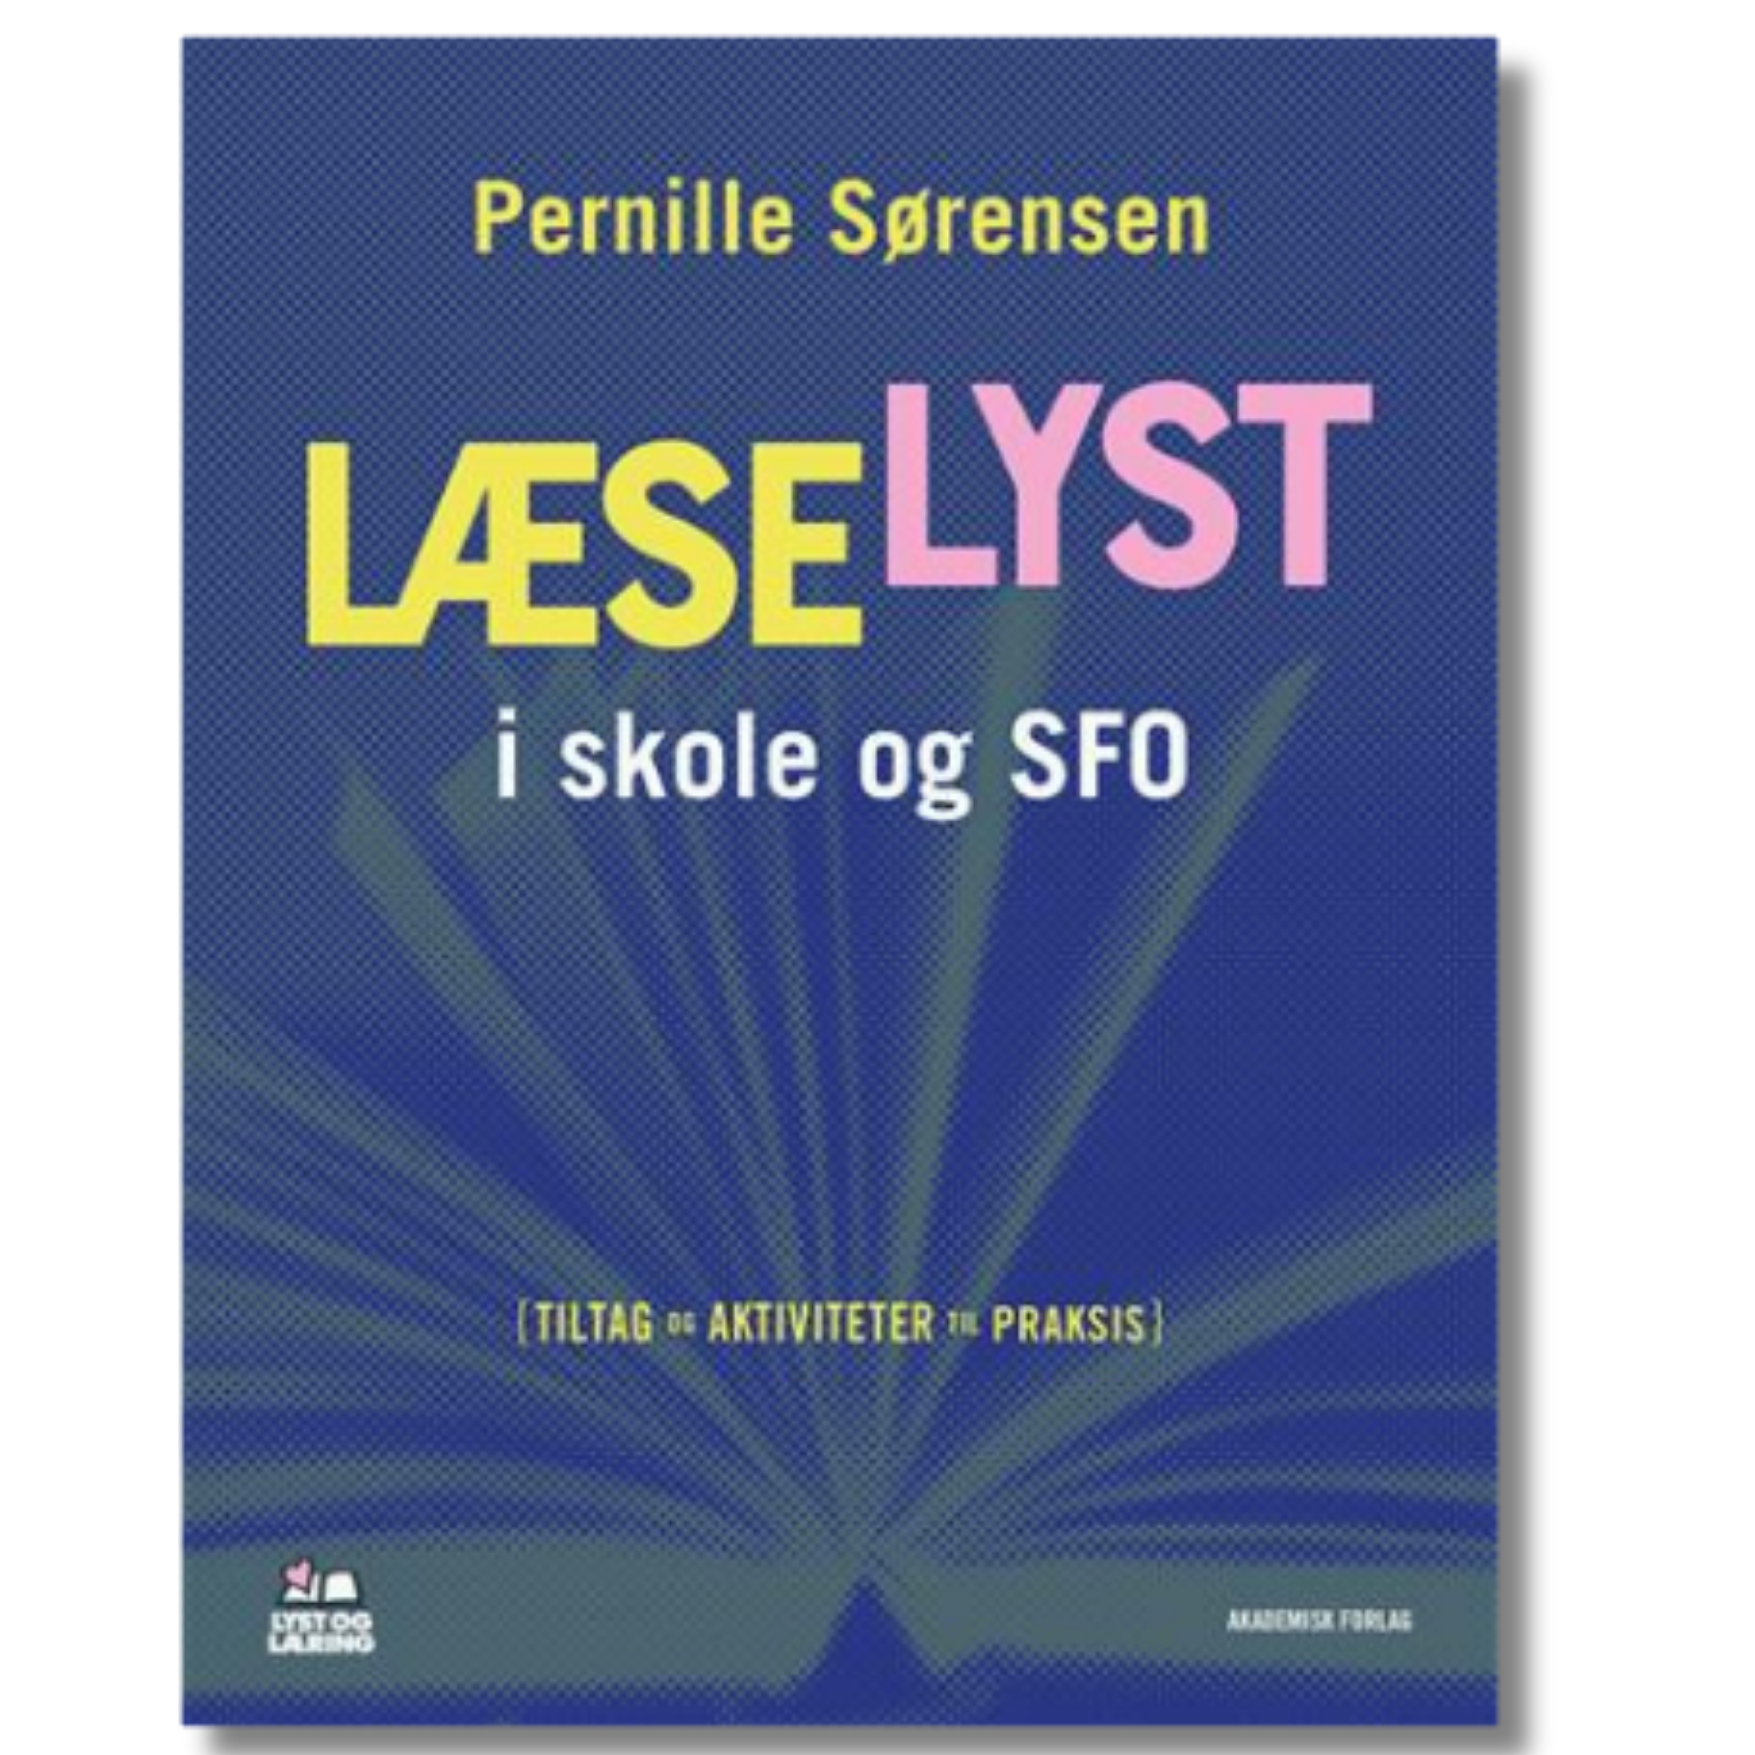 Læselyst i skole og SFO af Pernille Sørensen